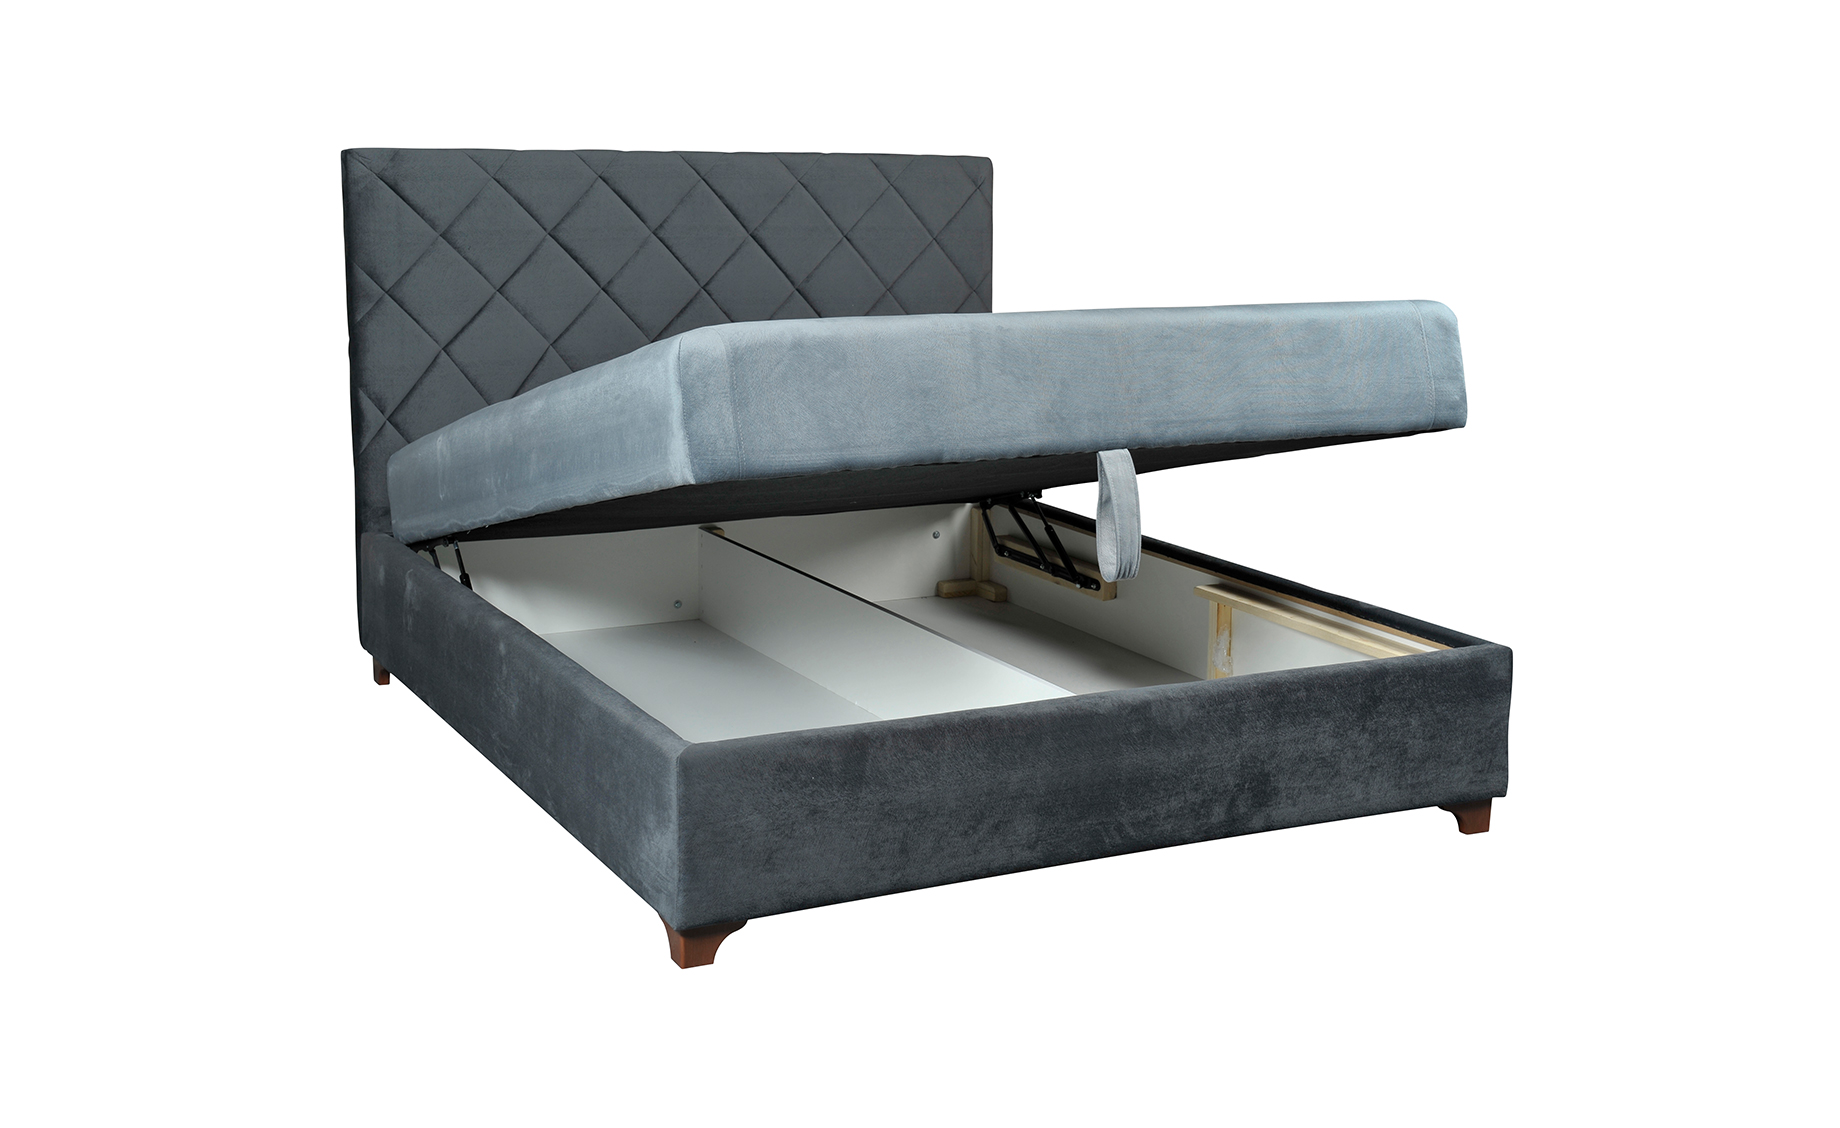 Castro francuski krevet sa spremnikom 175x210x120cm